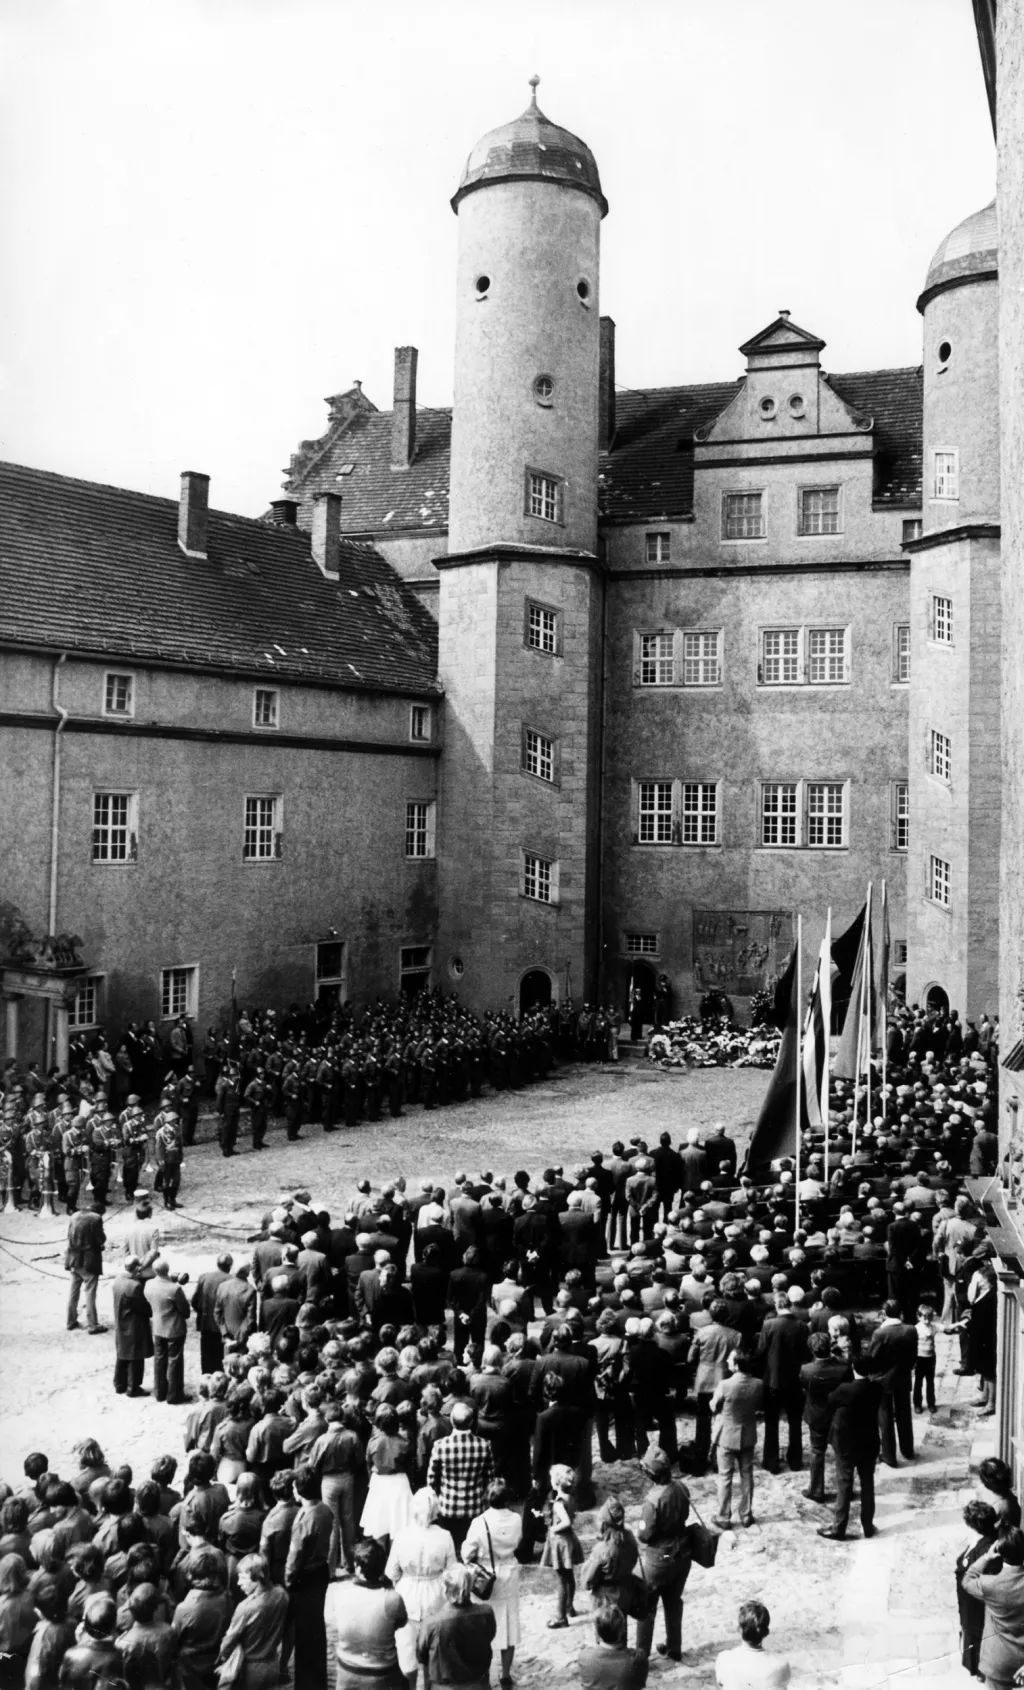 Mezi první místa, kde byl umístěn koncentrační tábor, patřil hrad Lichtenburg v malém městečku Prettin ve východním Německu. Tábor byl otevřen v roce 1933. Fotografie zachycuje pietní akci, která se na hradě uskutěčnila v roce 1978